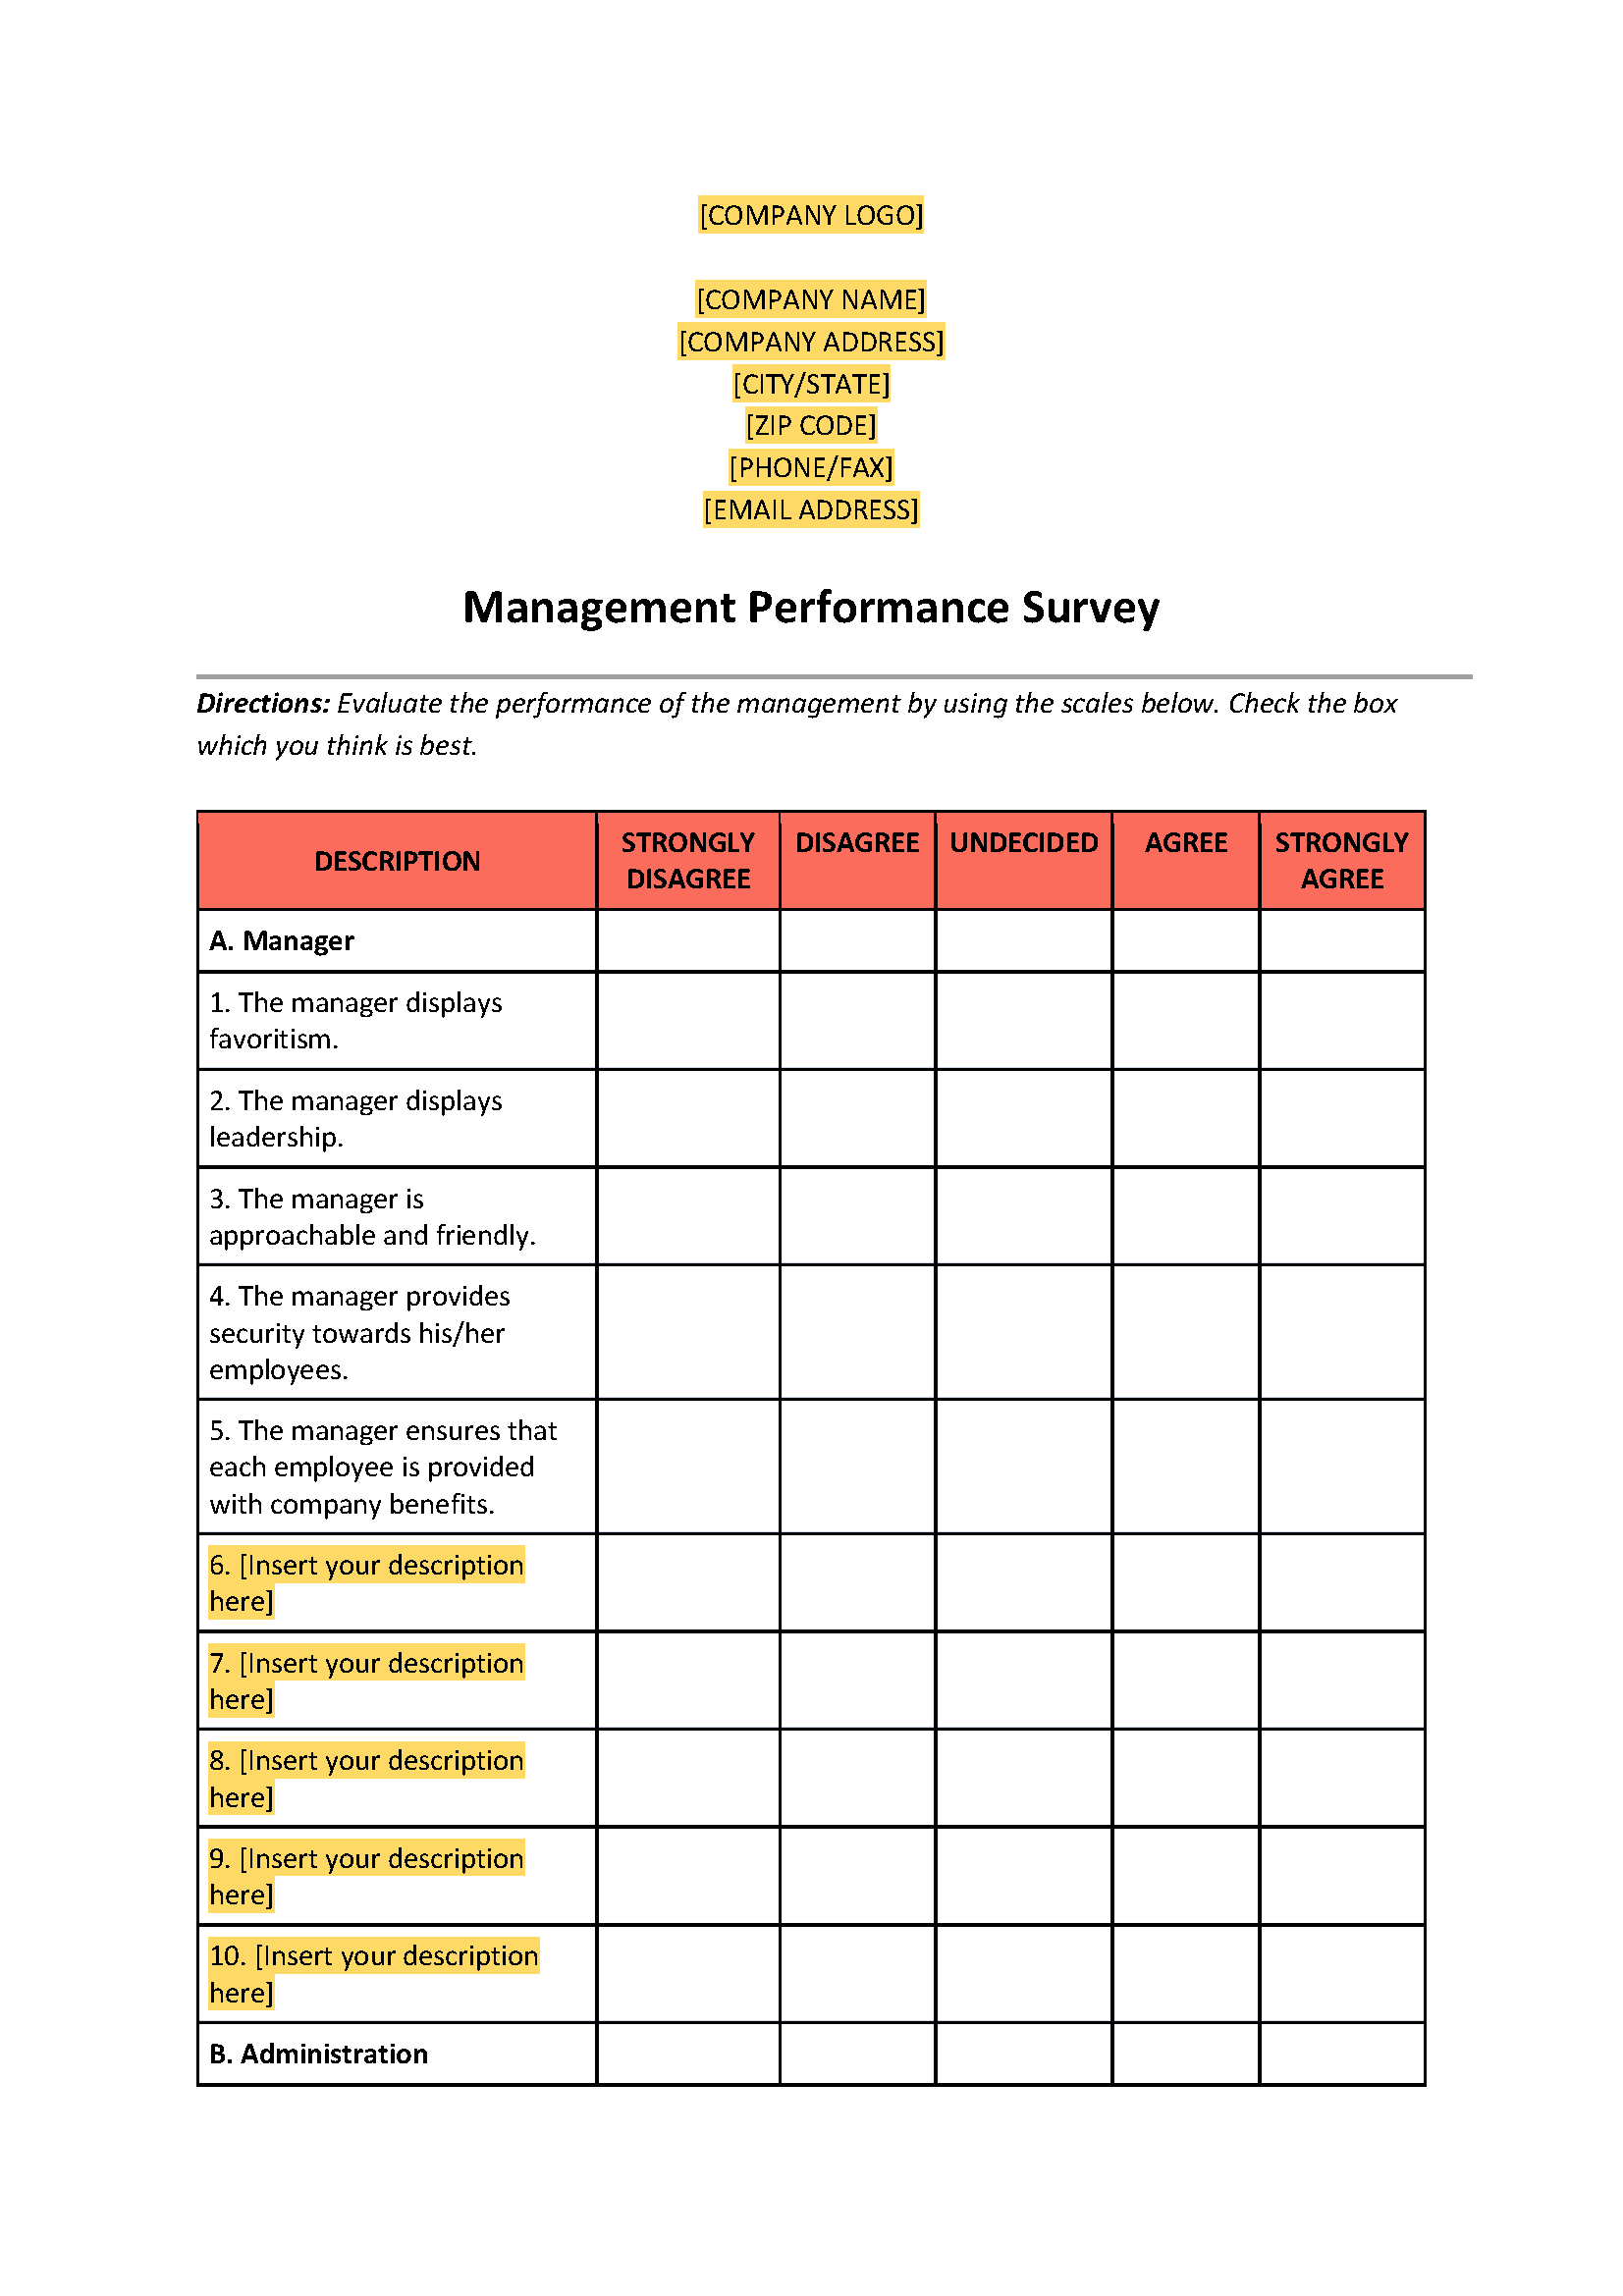 Management Performance Survey